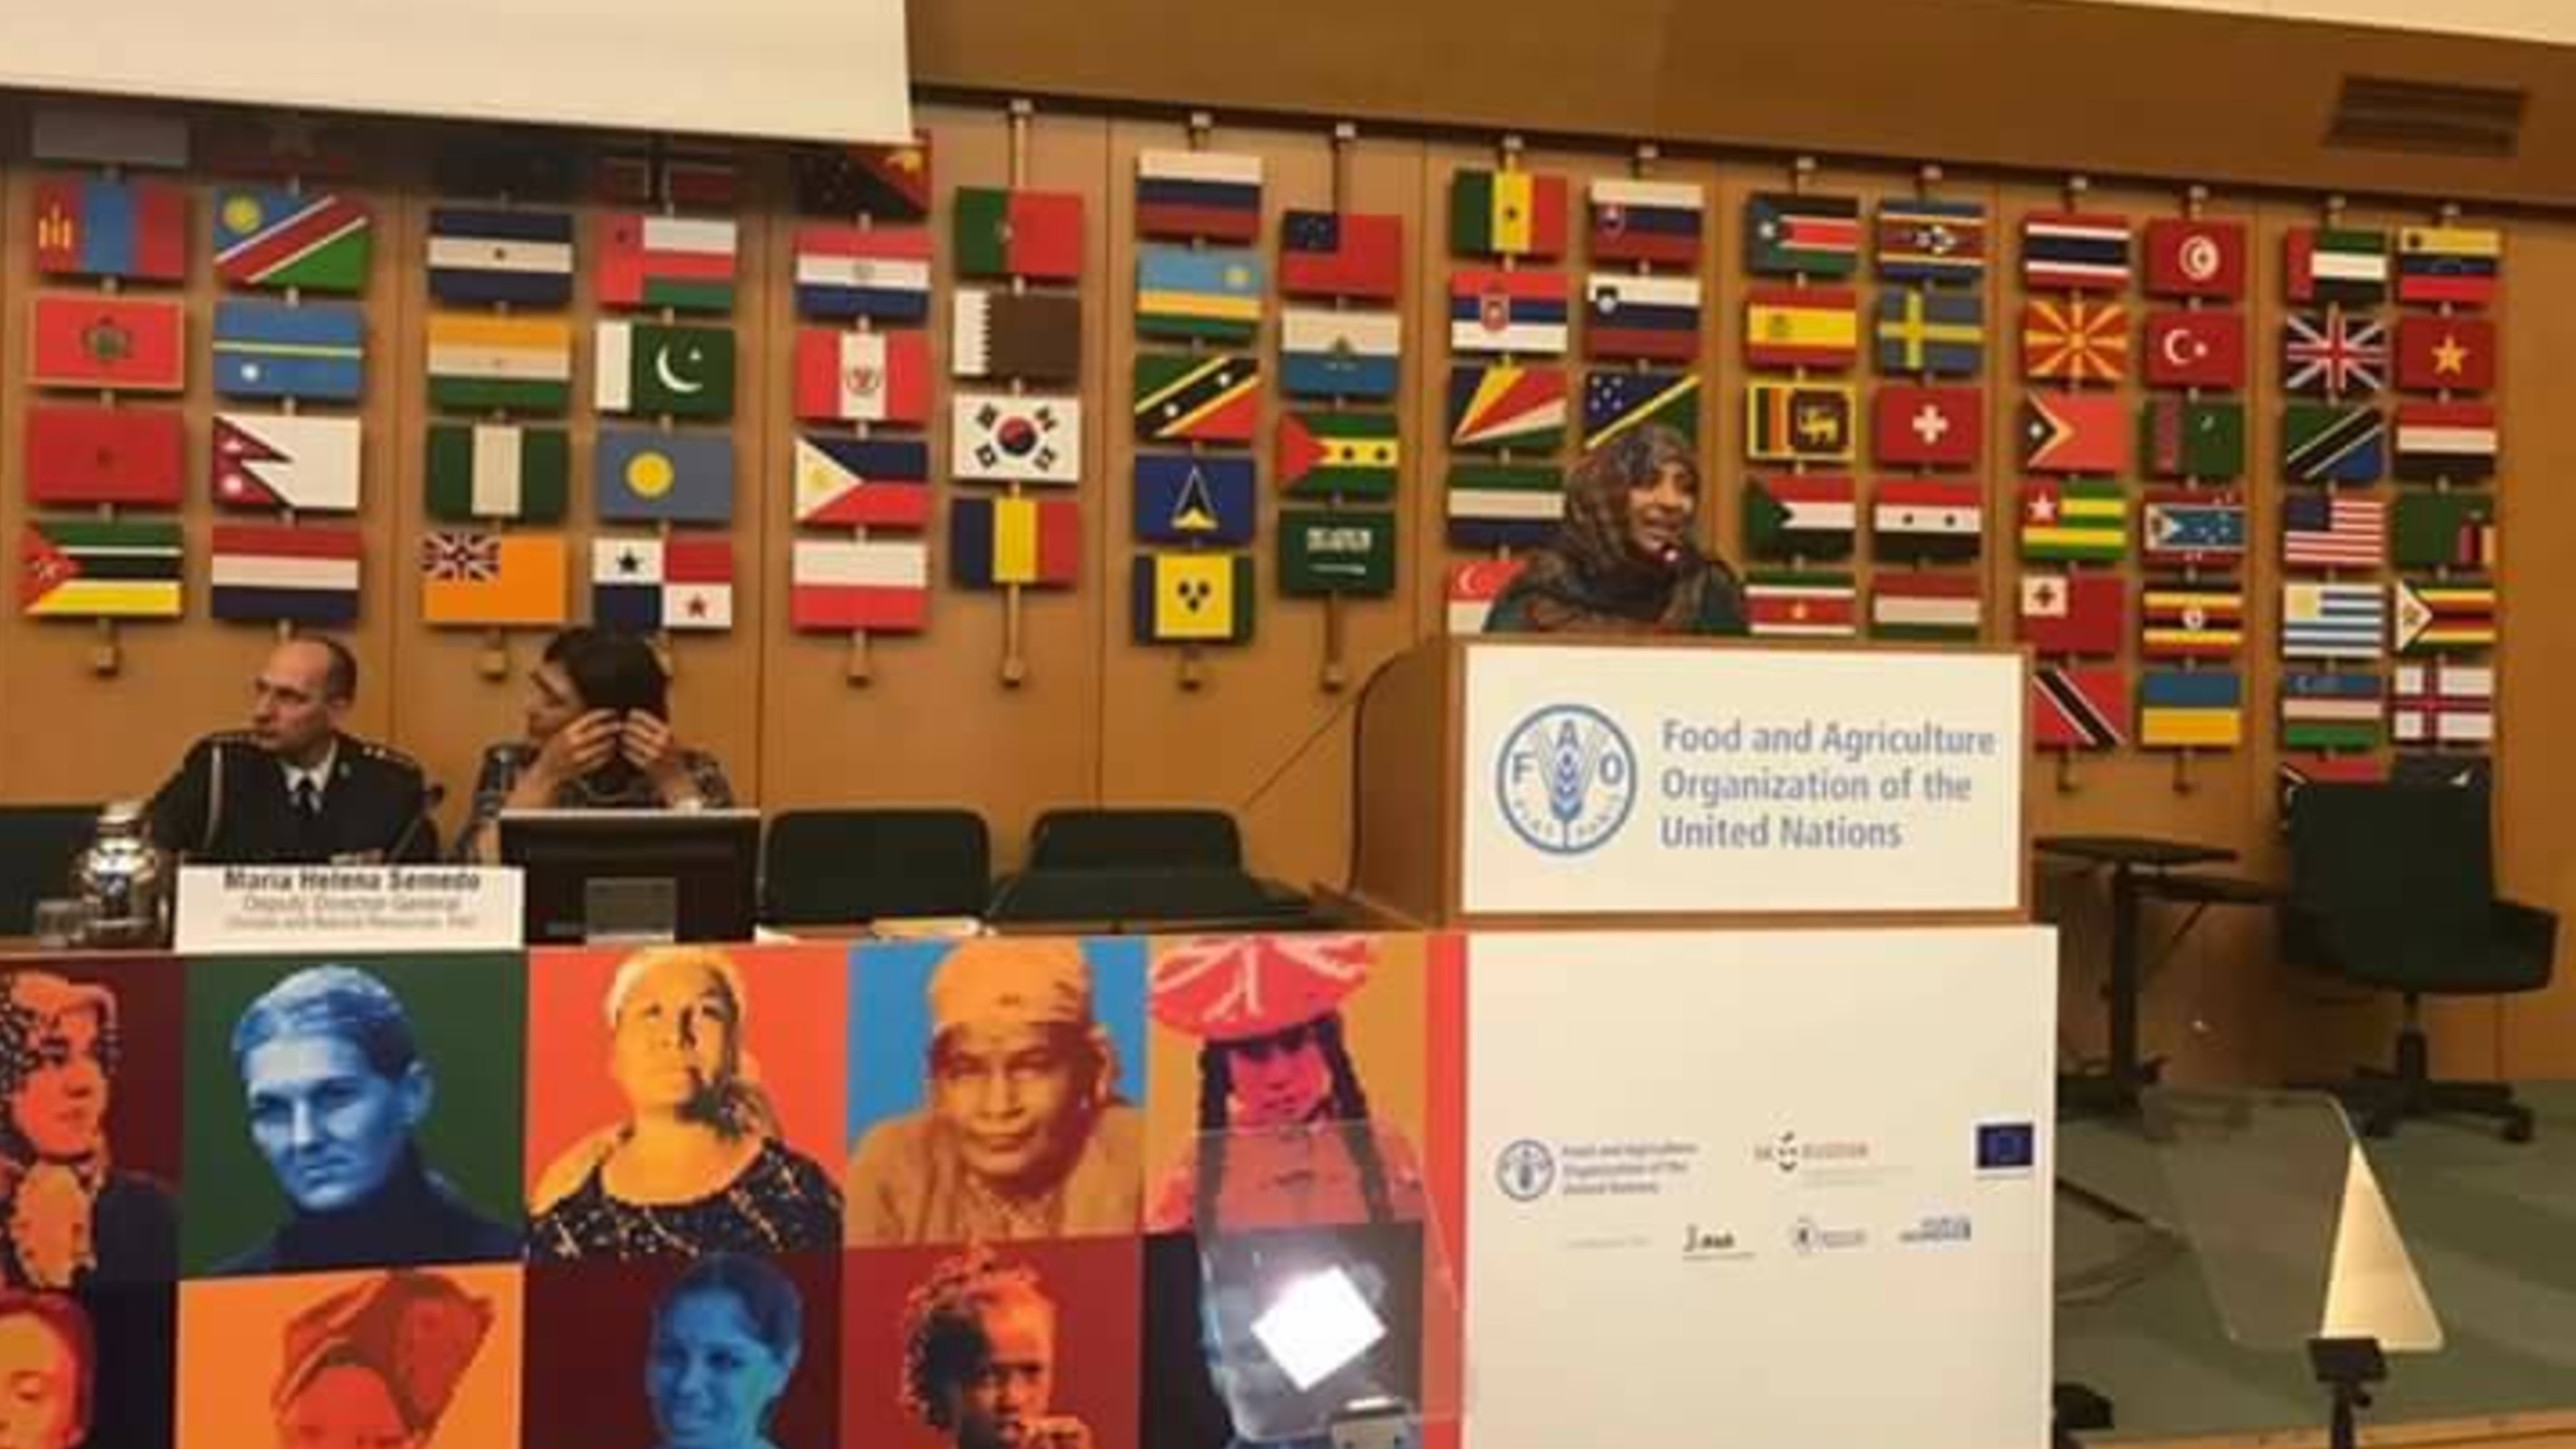 كلمة الناشطة الحائزة على جائزة نوبل للسلام توكل كرمان في الجلسة الافتتاحية لمؤتمر الفاو عن حقوق المرأة الريفية ومكافحة الفقر والجوع